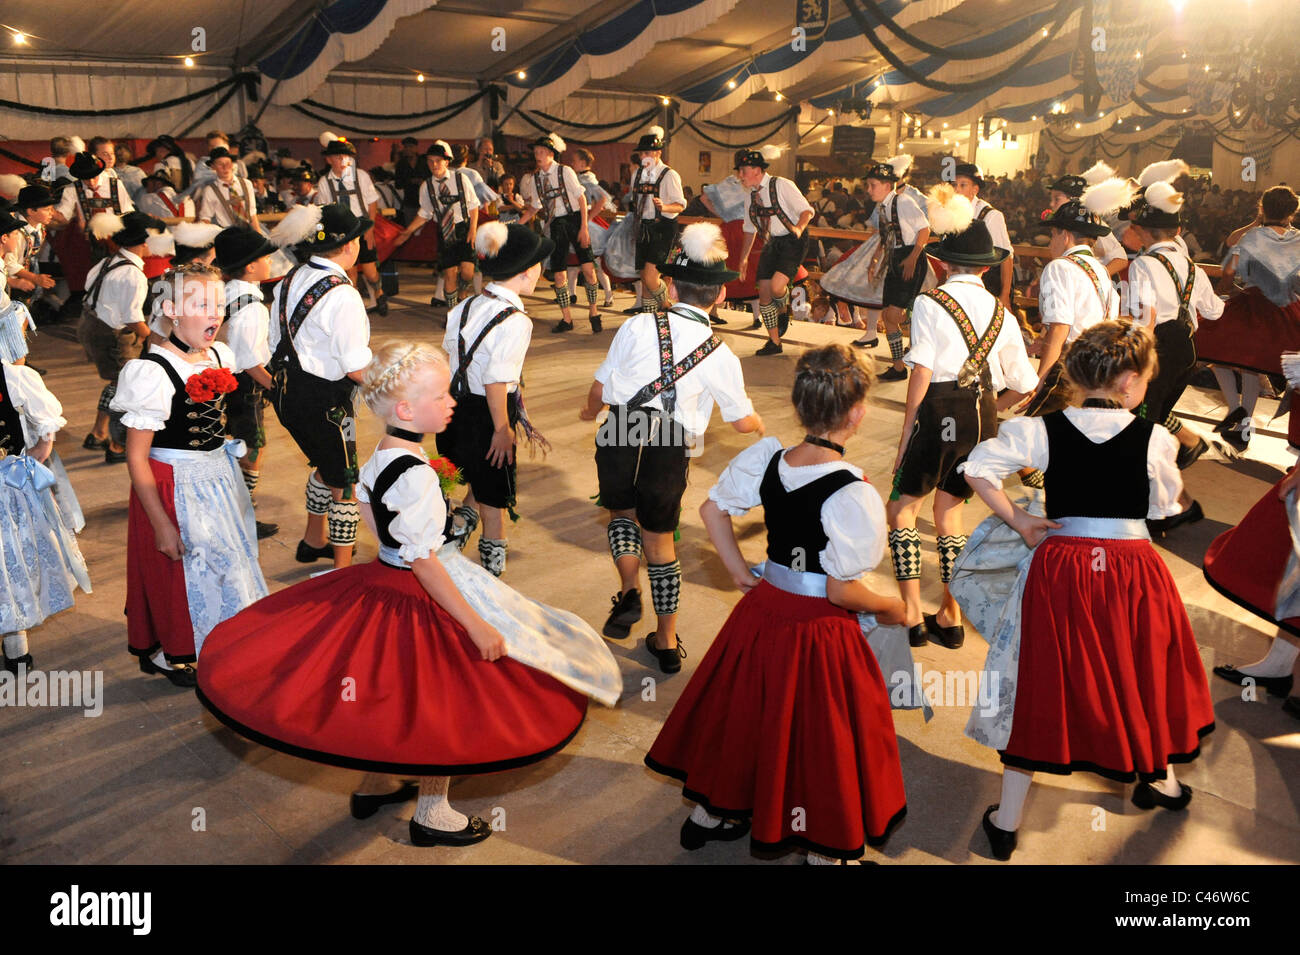 Danseur en costumes traditionnels montrent la fameuse danse "chuhplattler' en Bavière, Allemagne Banque D'Images